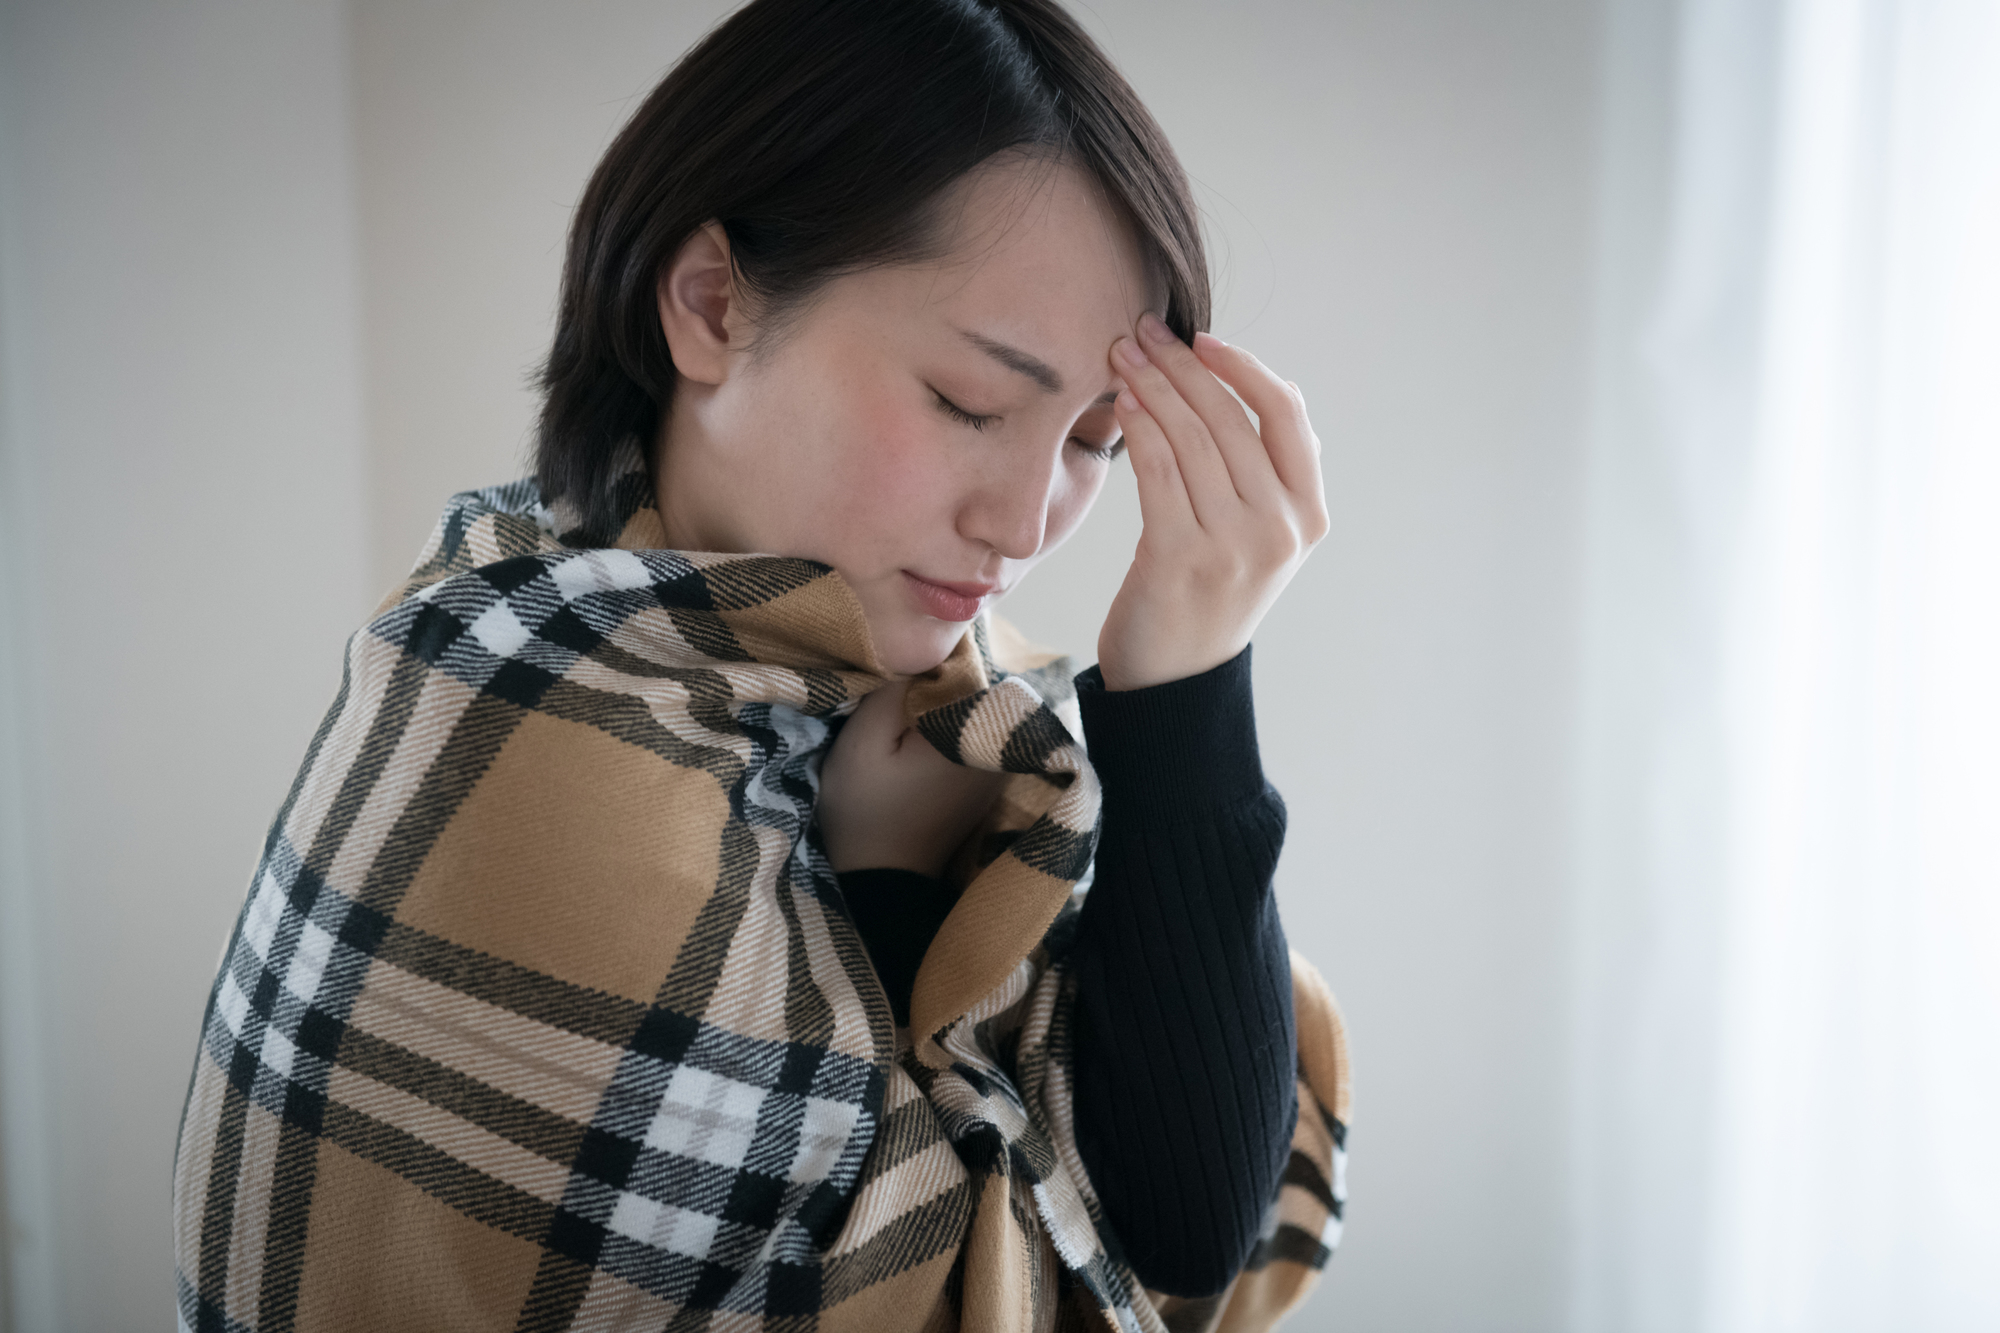 その頭痛 寒さが原因かも 気温と頭痛の関係と対策 吐き気も伴う場合は要注意 Medicalook メディカルック